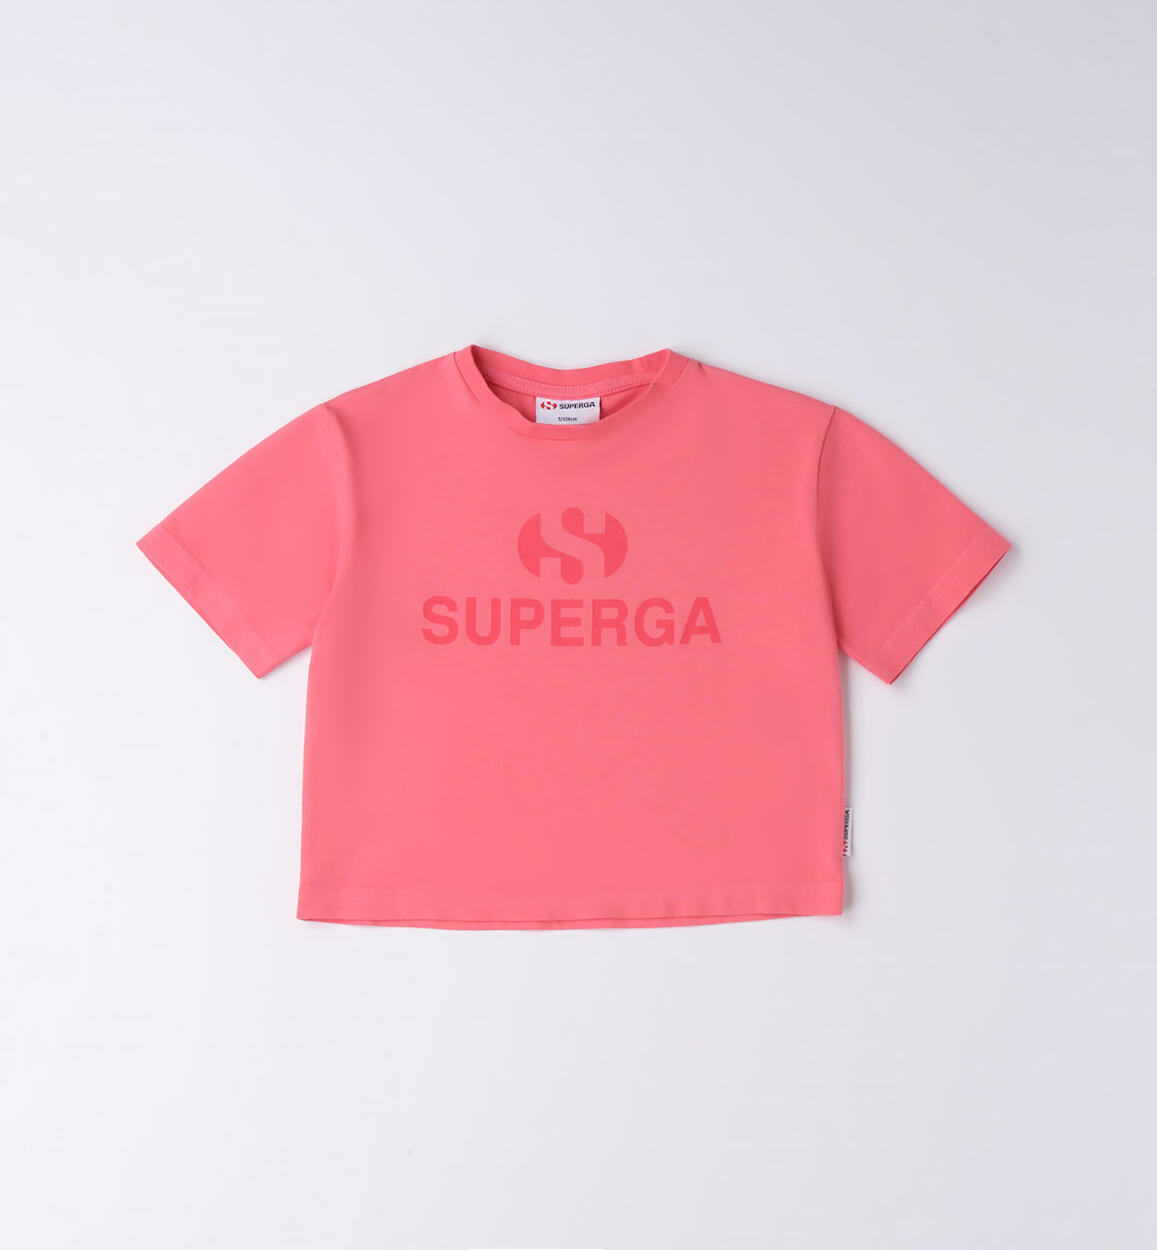 T-shirt Superga 100% cotone bambina ROSSO SUPERGA